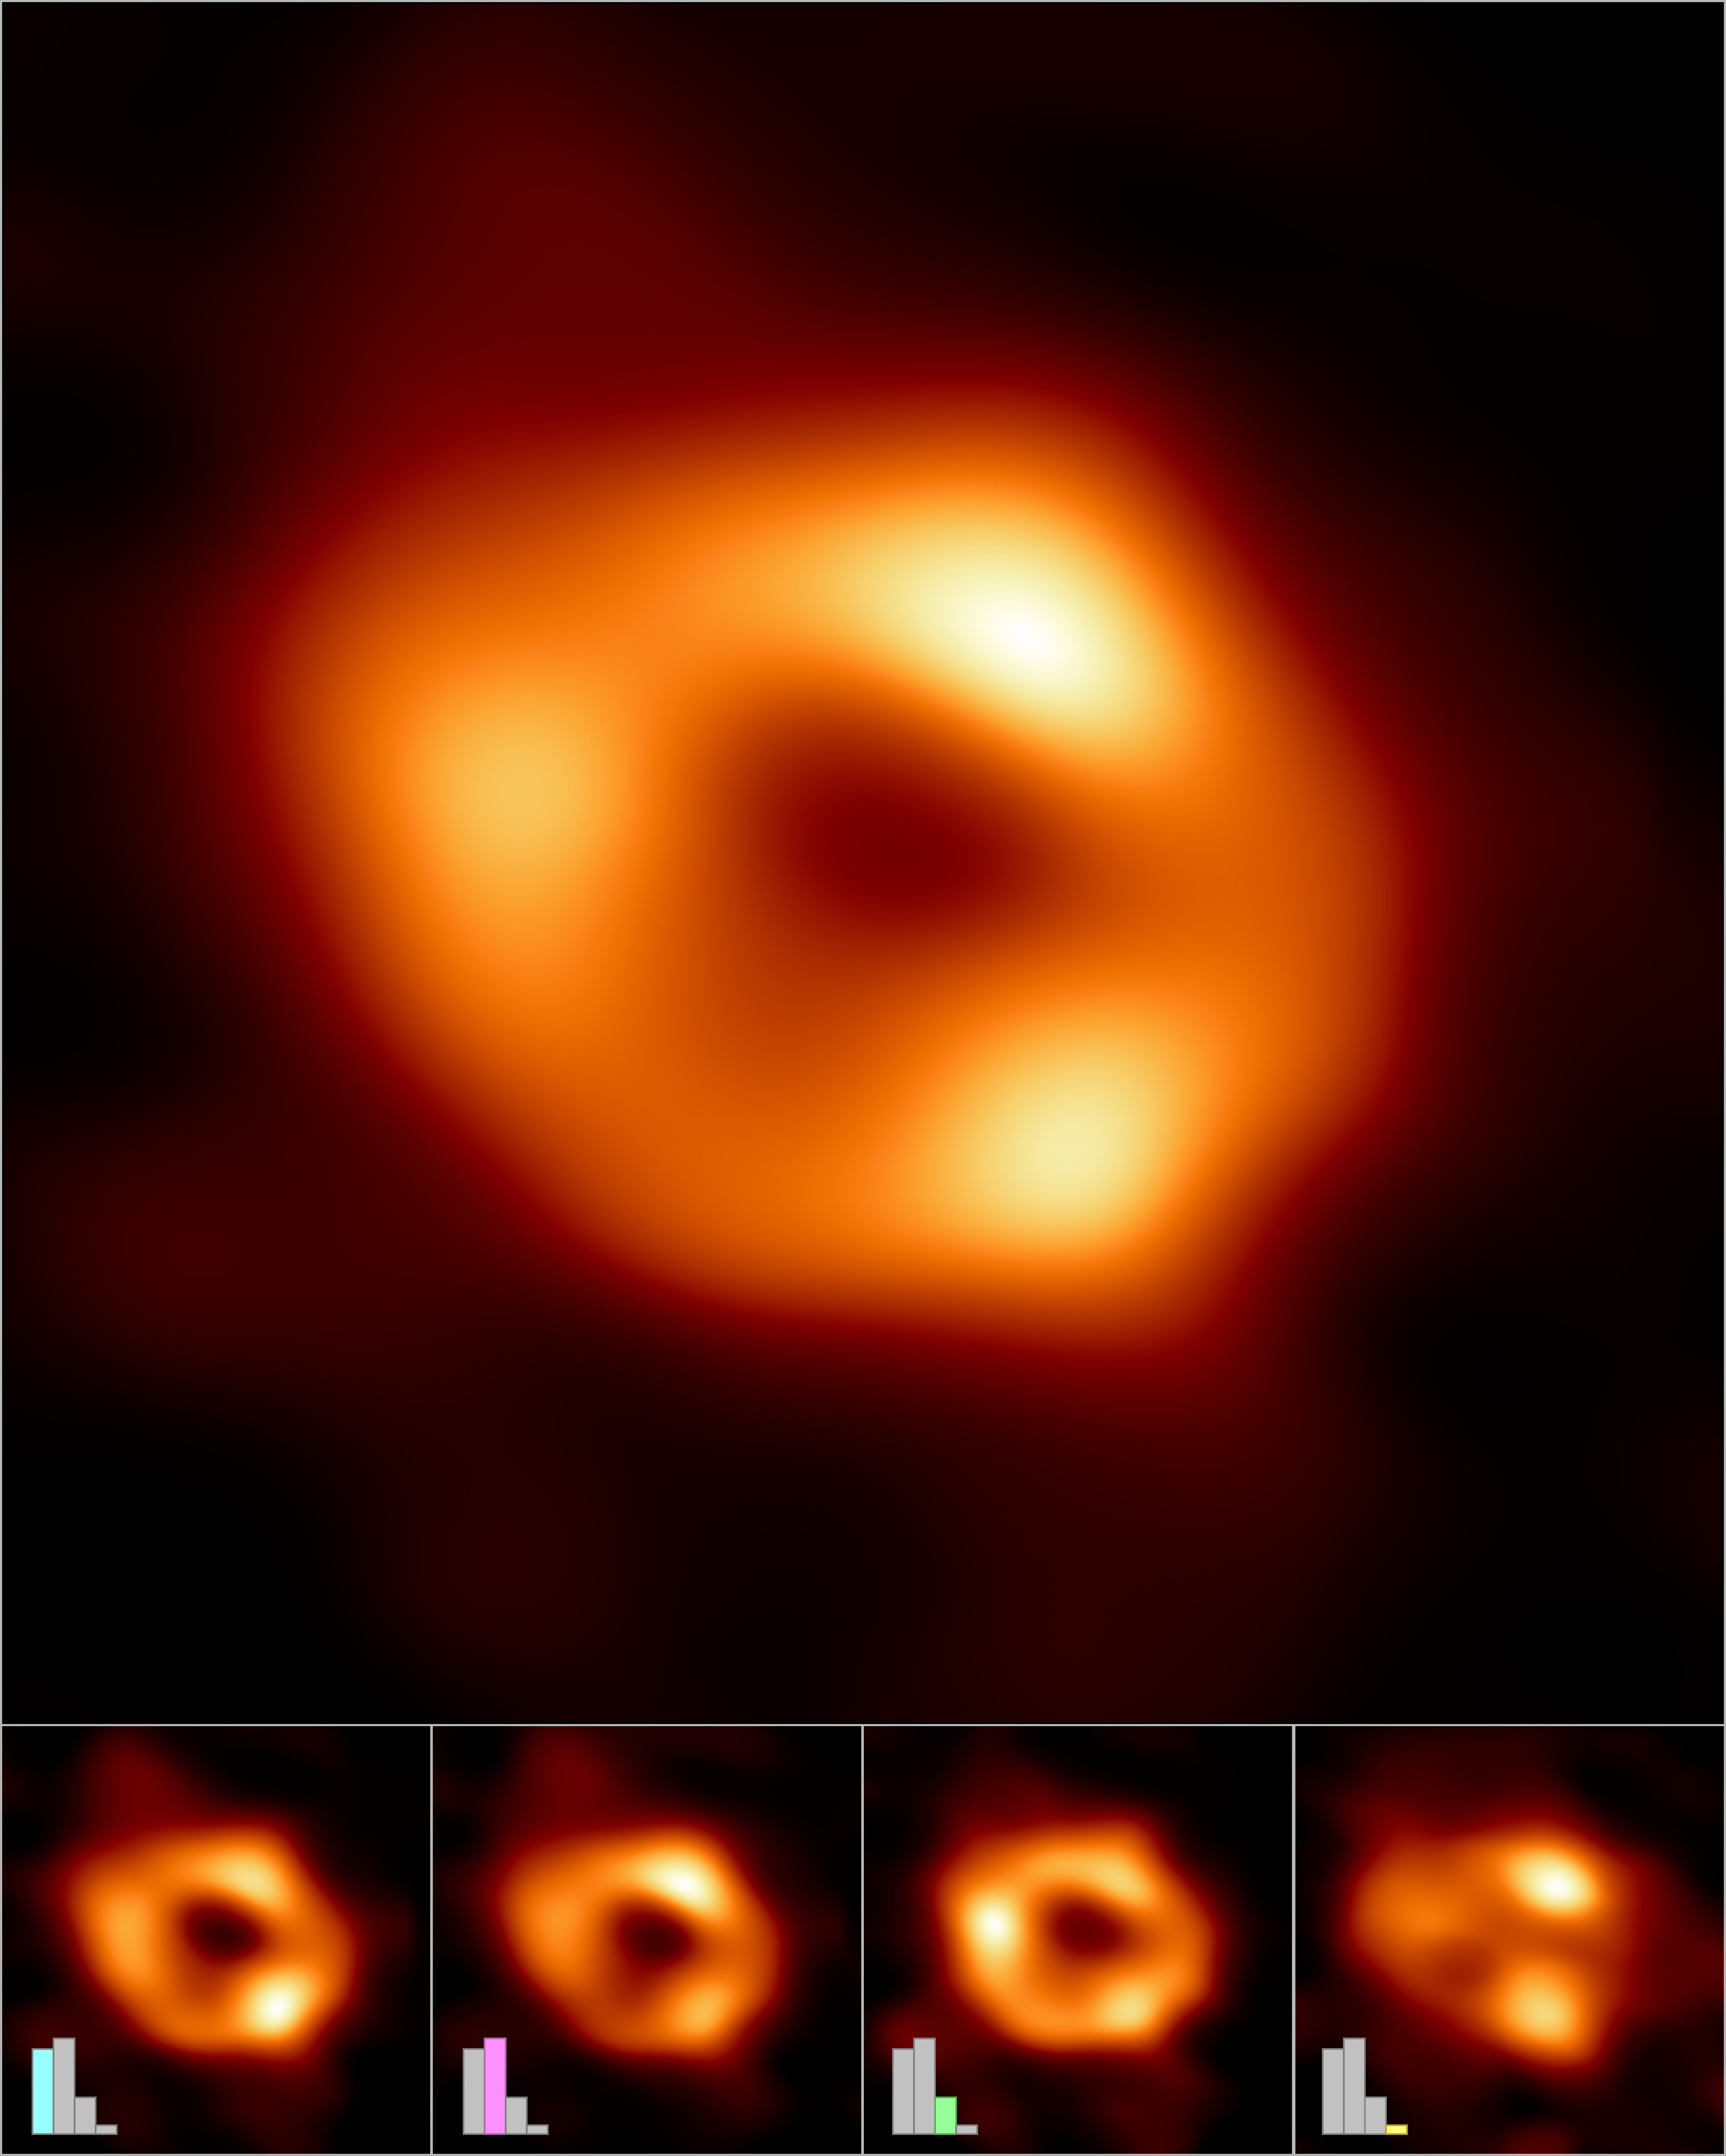 Imágenes de Sagitario A, el agujero negro en lo centro de la Vía Láctea EHT